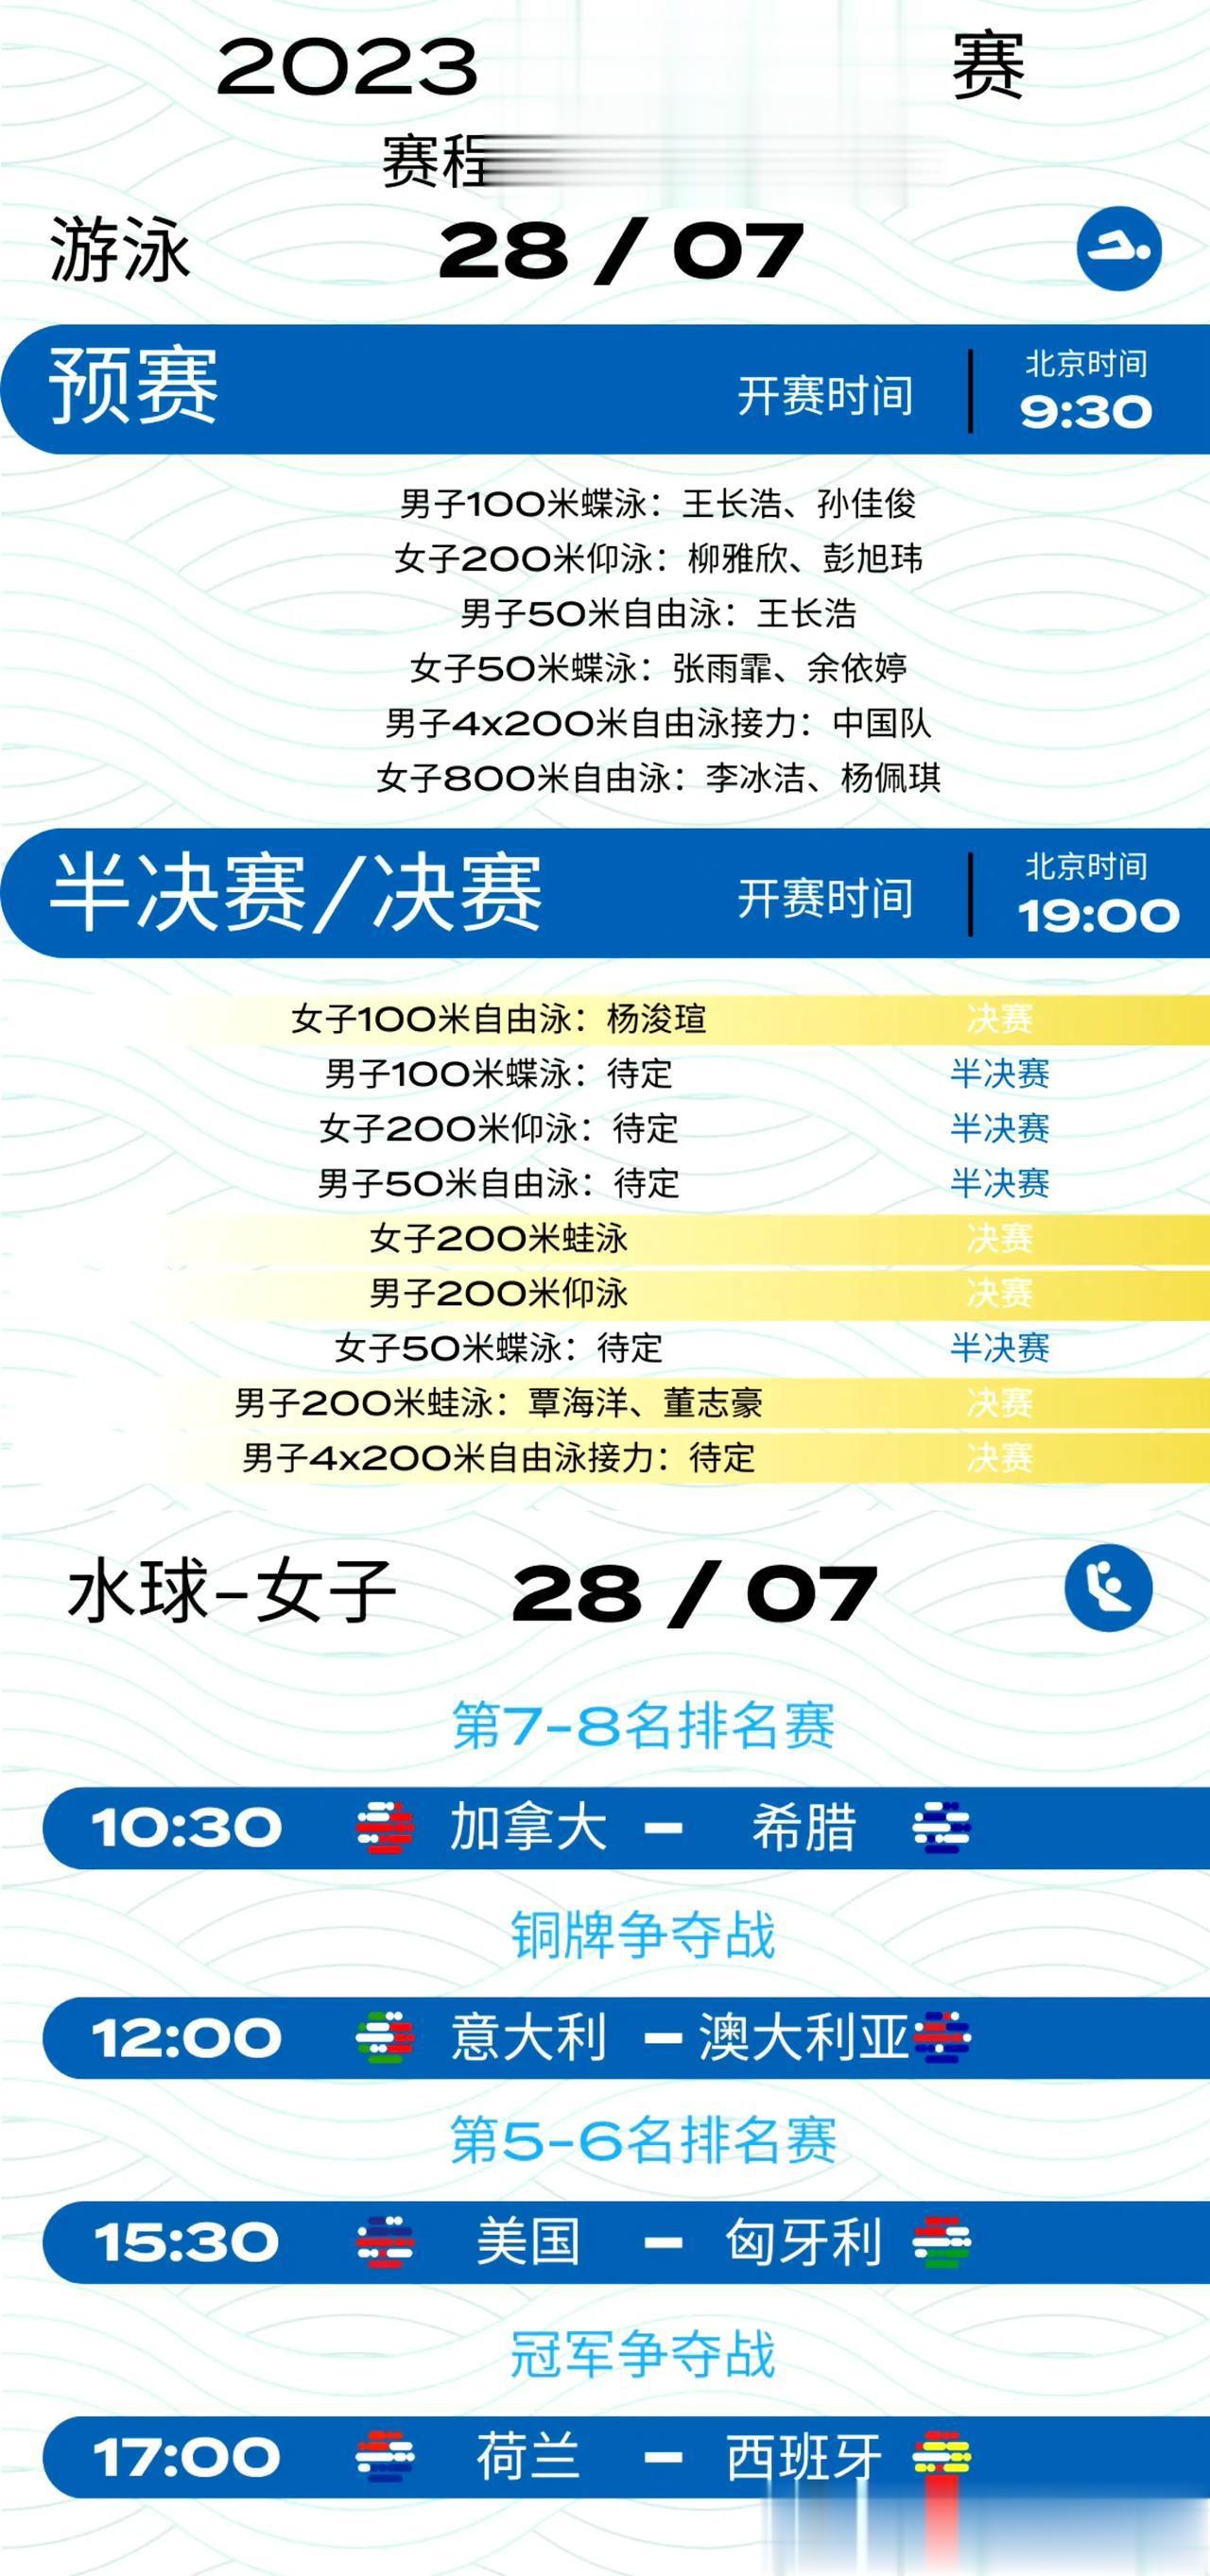 28日（周五）世锦赛中国队赛程预告
杨浚瑄、覃海洋、董志豪冲击金牌
一、预赛：0(1)